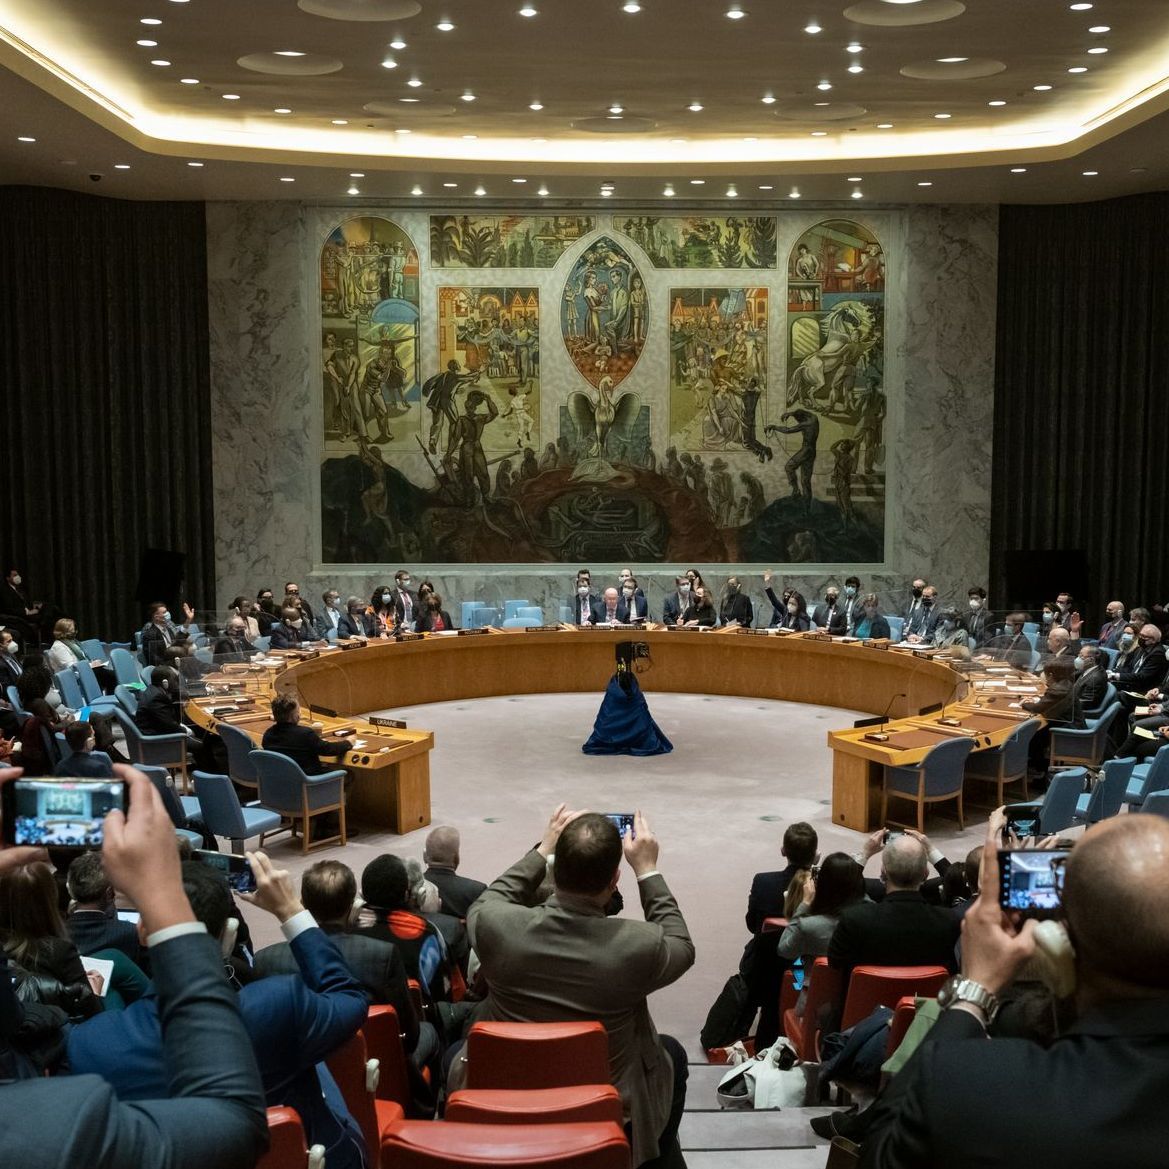 Blick in den UN-Sicherheitsrat: Um einen runden Tisch herum sitzen einige Menschen, Fotografen dokumentieren das Geschehen.